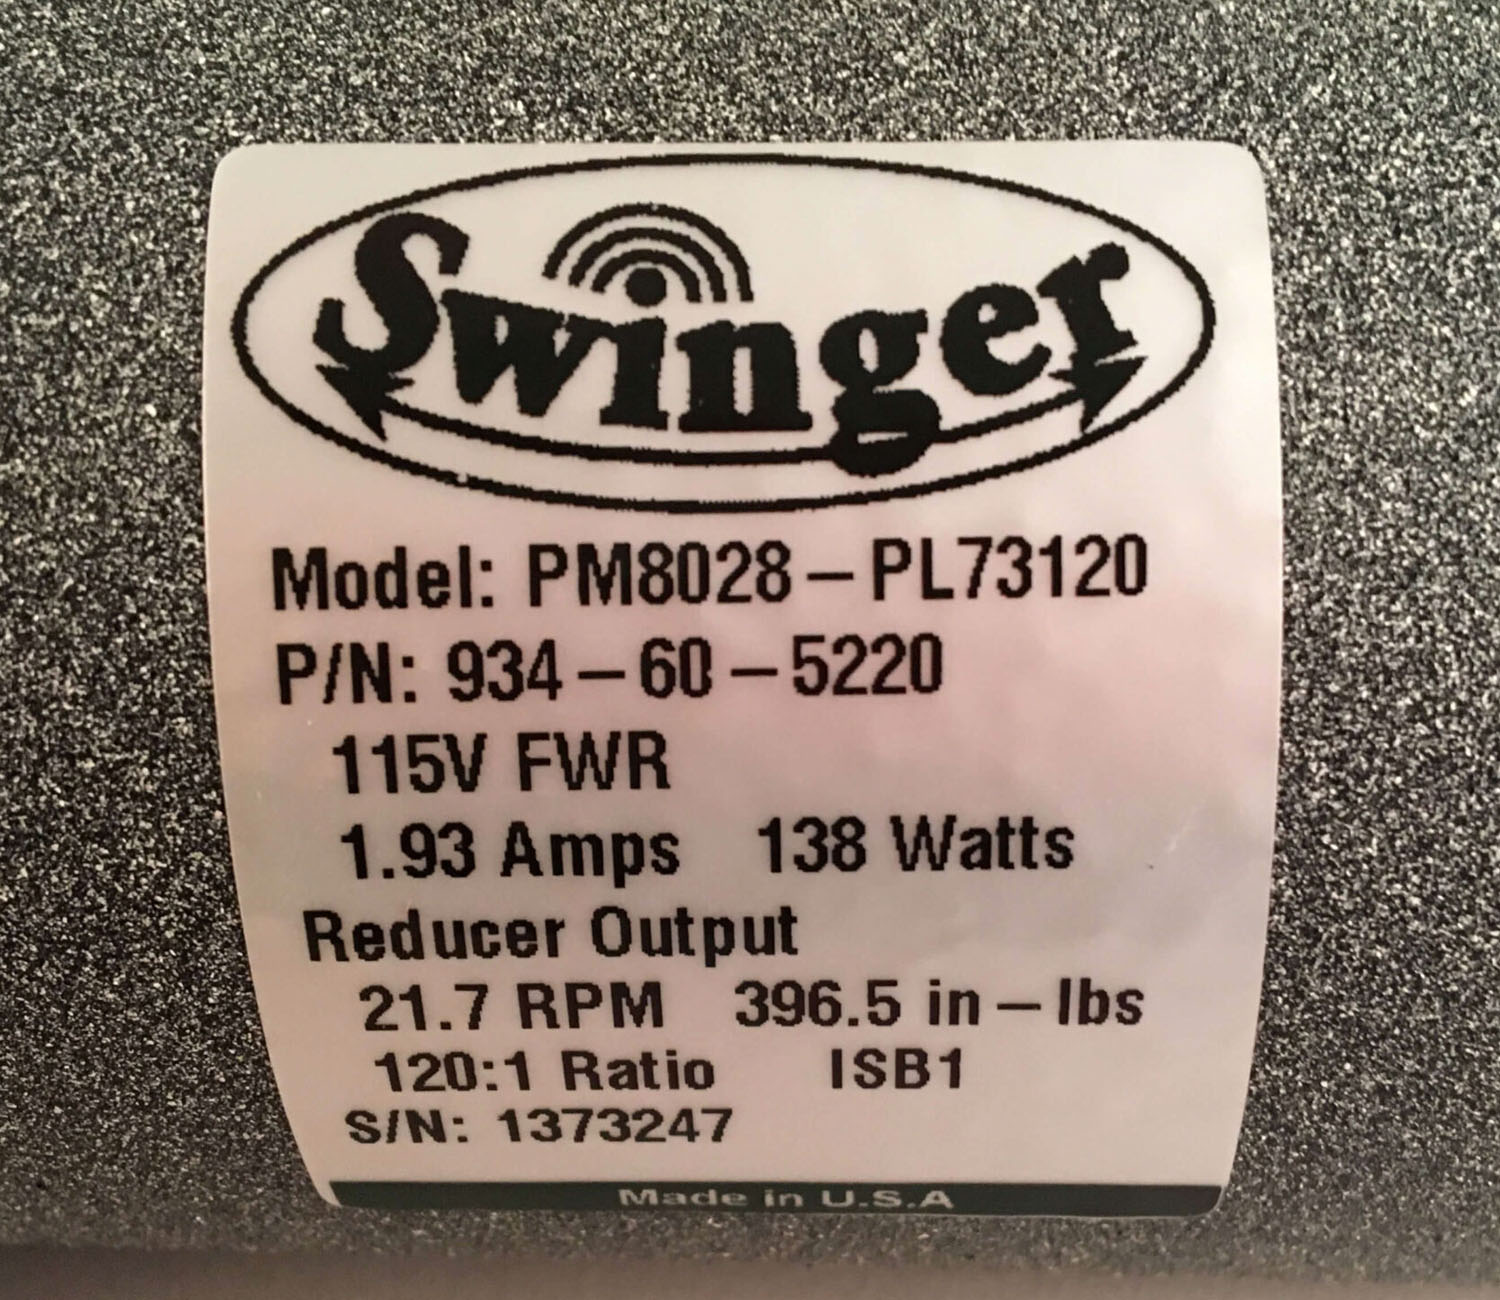 Replacement 12v Motor - PM8028 - Gen II - Swinger MFG